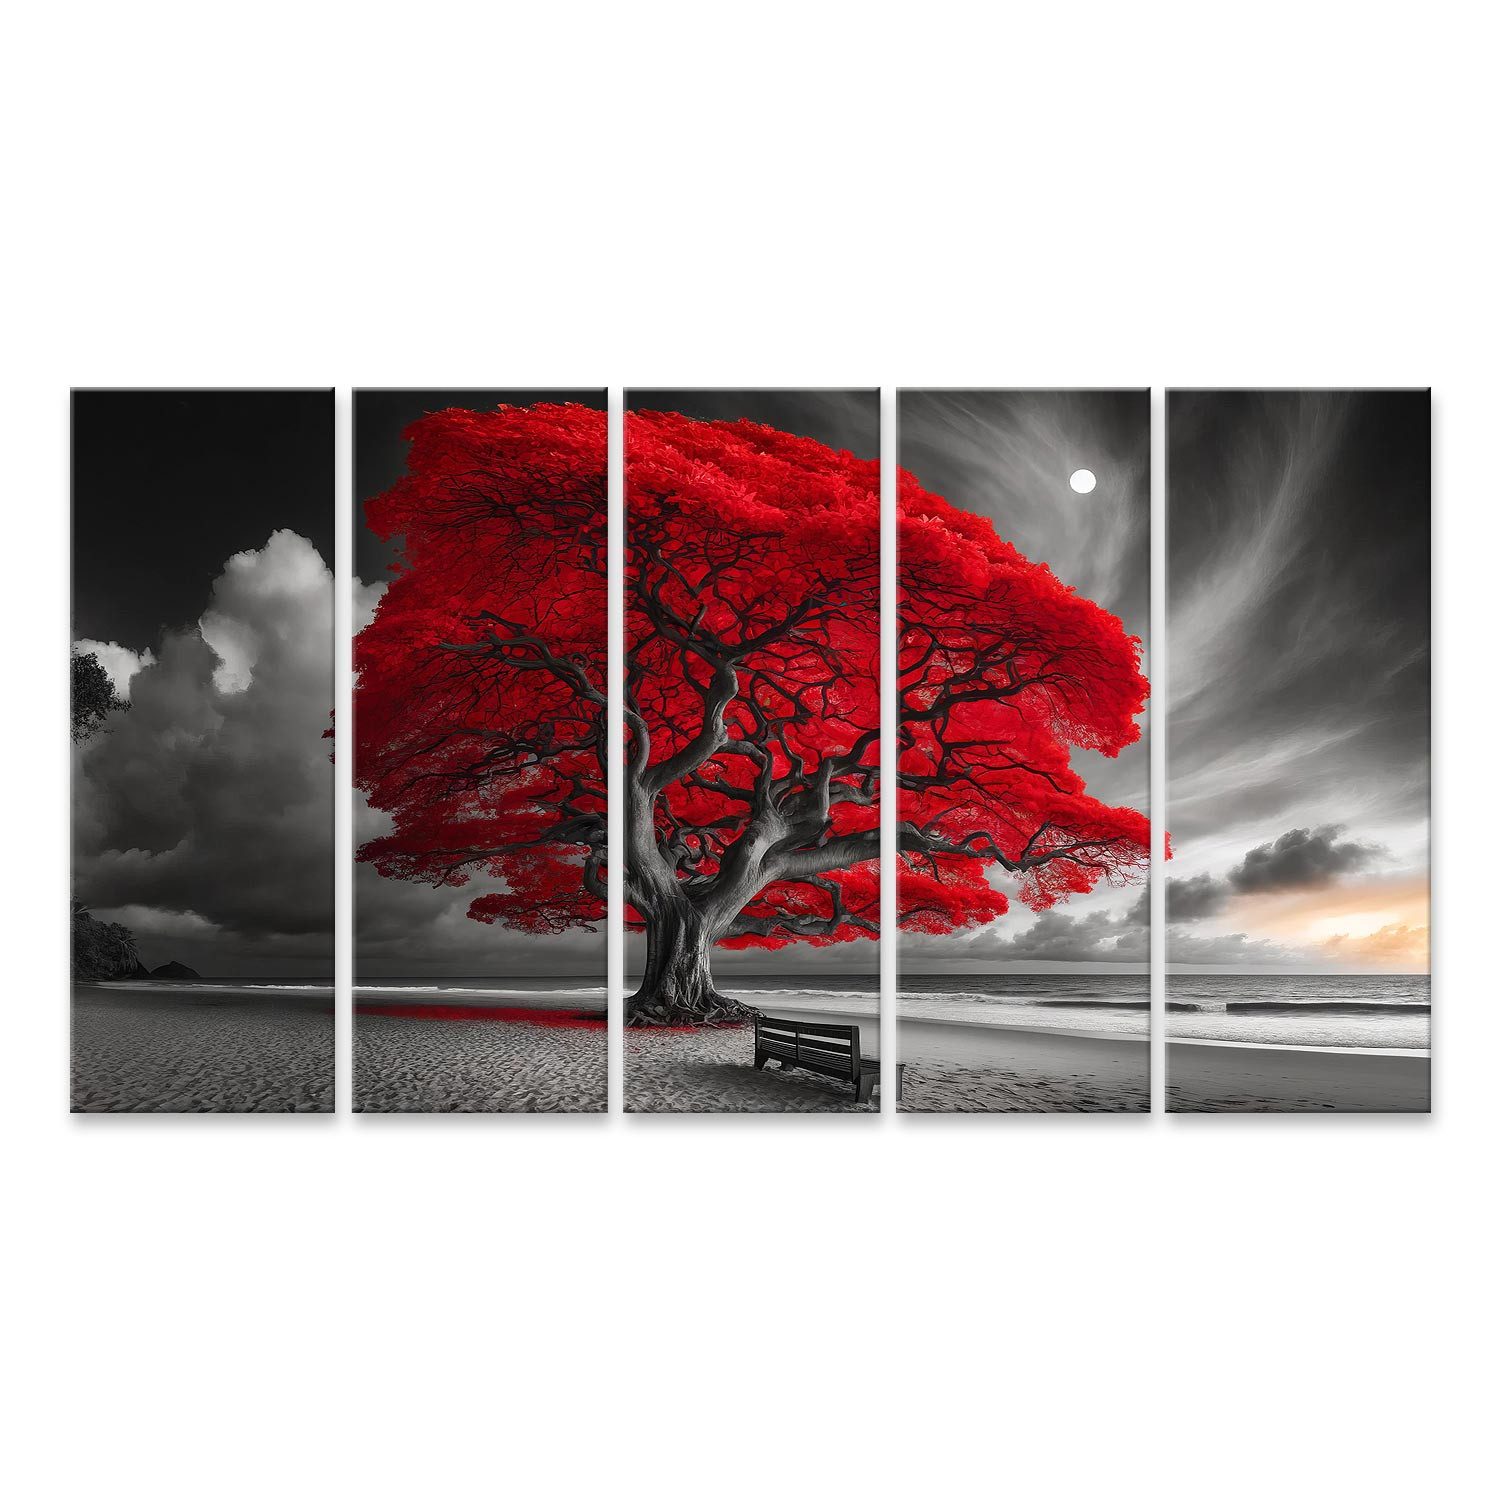 islandburner Leinwandbild Leuchtend roter Baum am Strand bei Mondlicht in Schwarzweiß